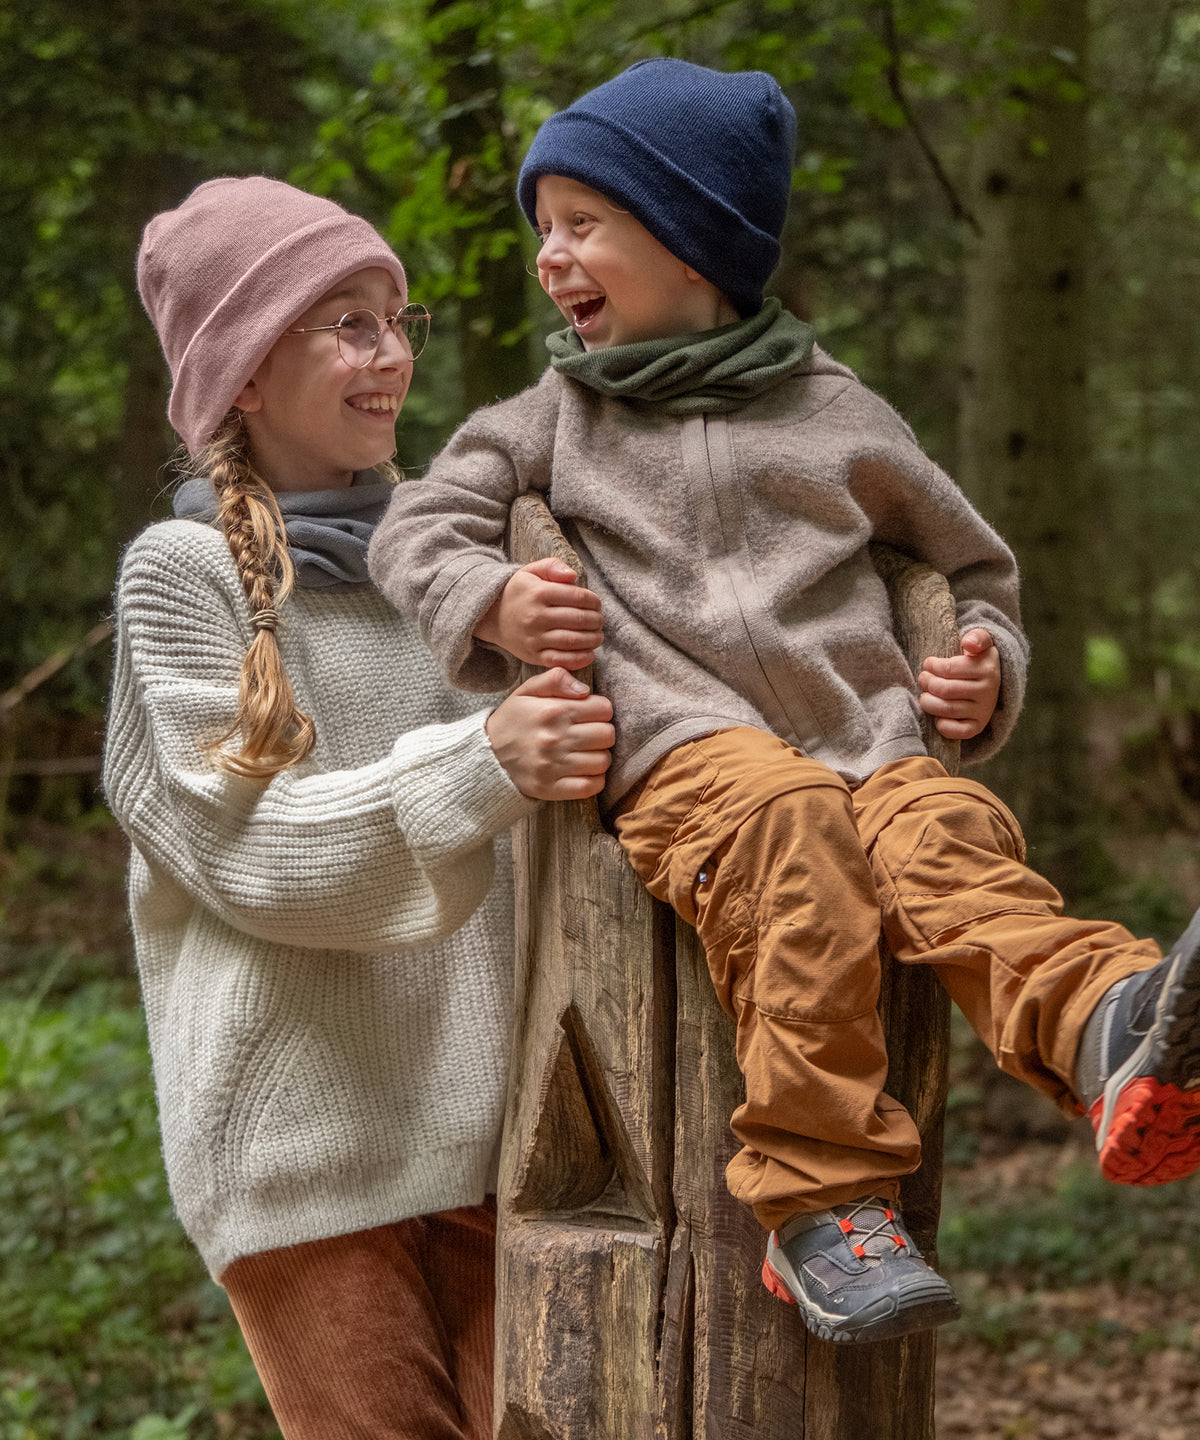 Zwei Kinder mit Schlauchschal und Strickmütze im Wald.